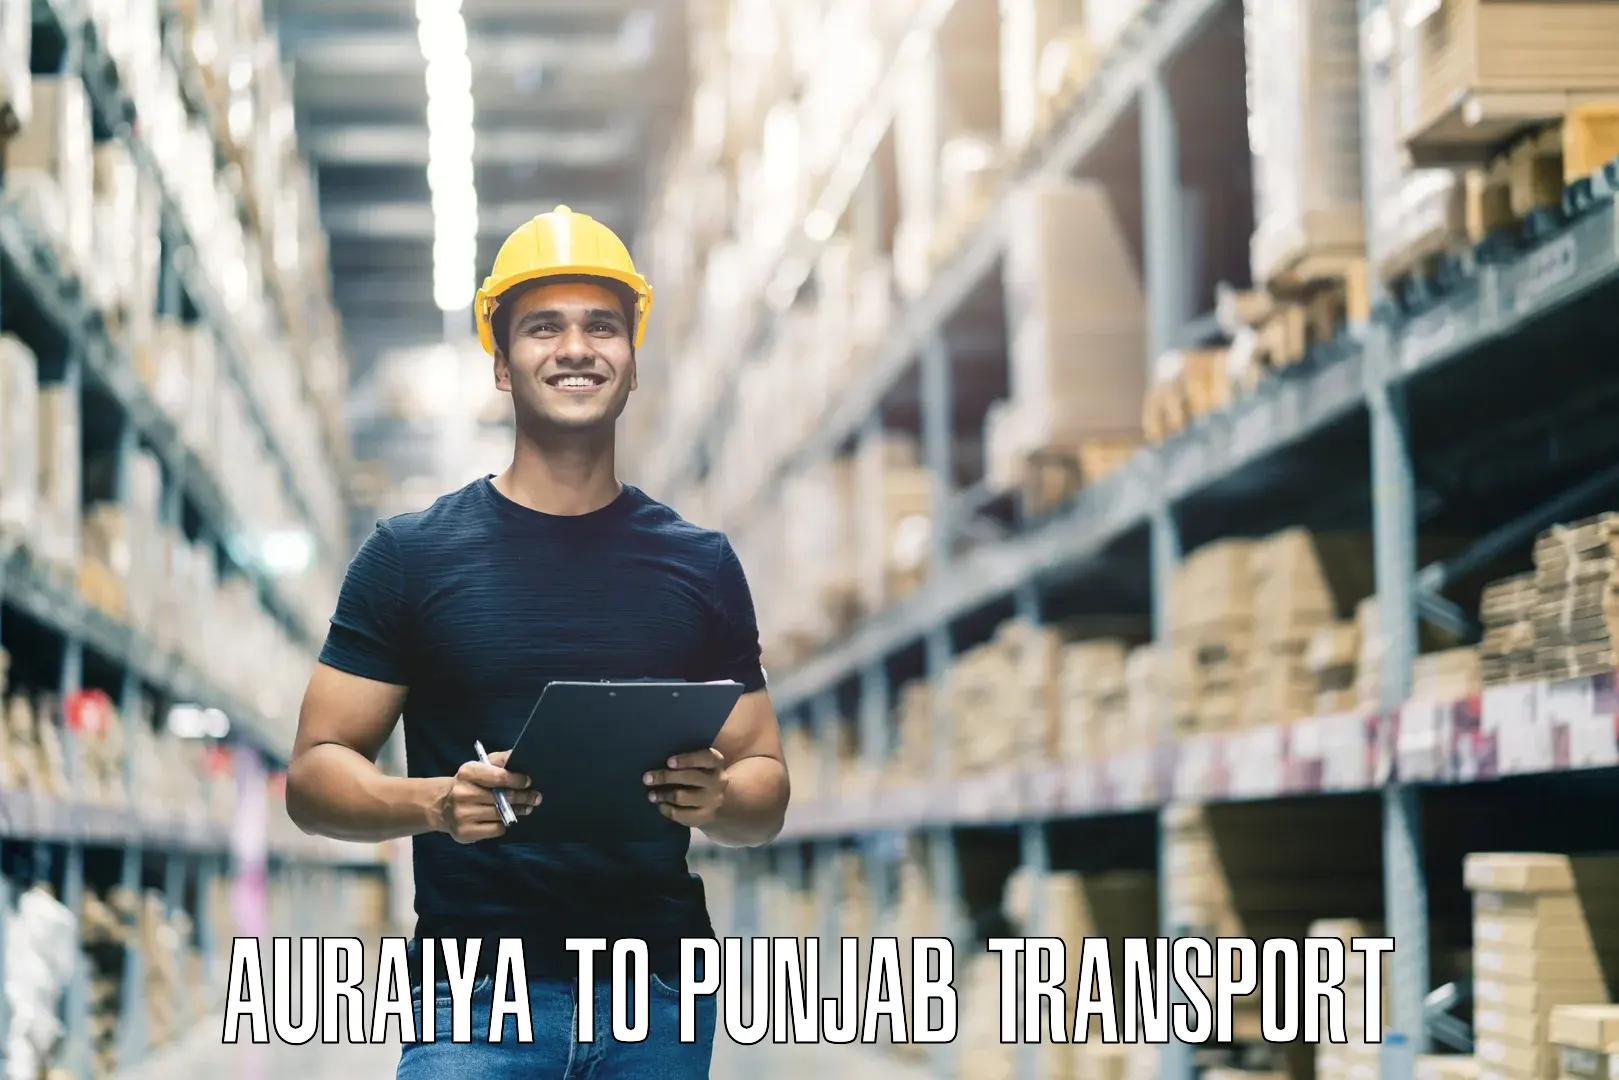 Express transport services Auraiya to Punjab